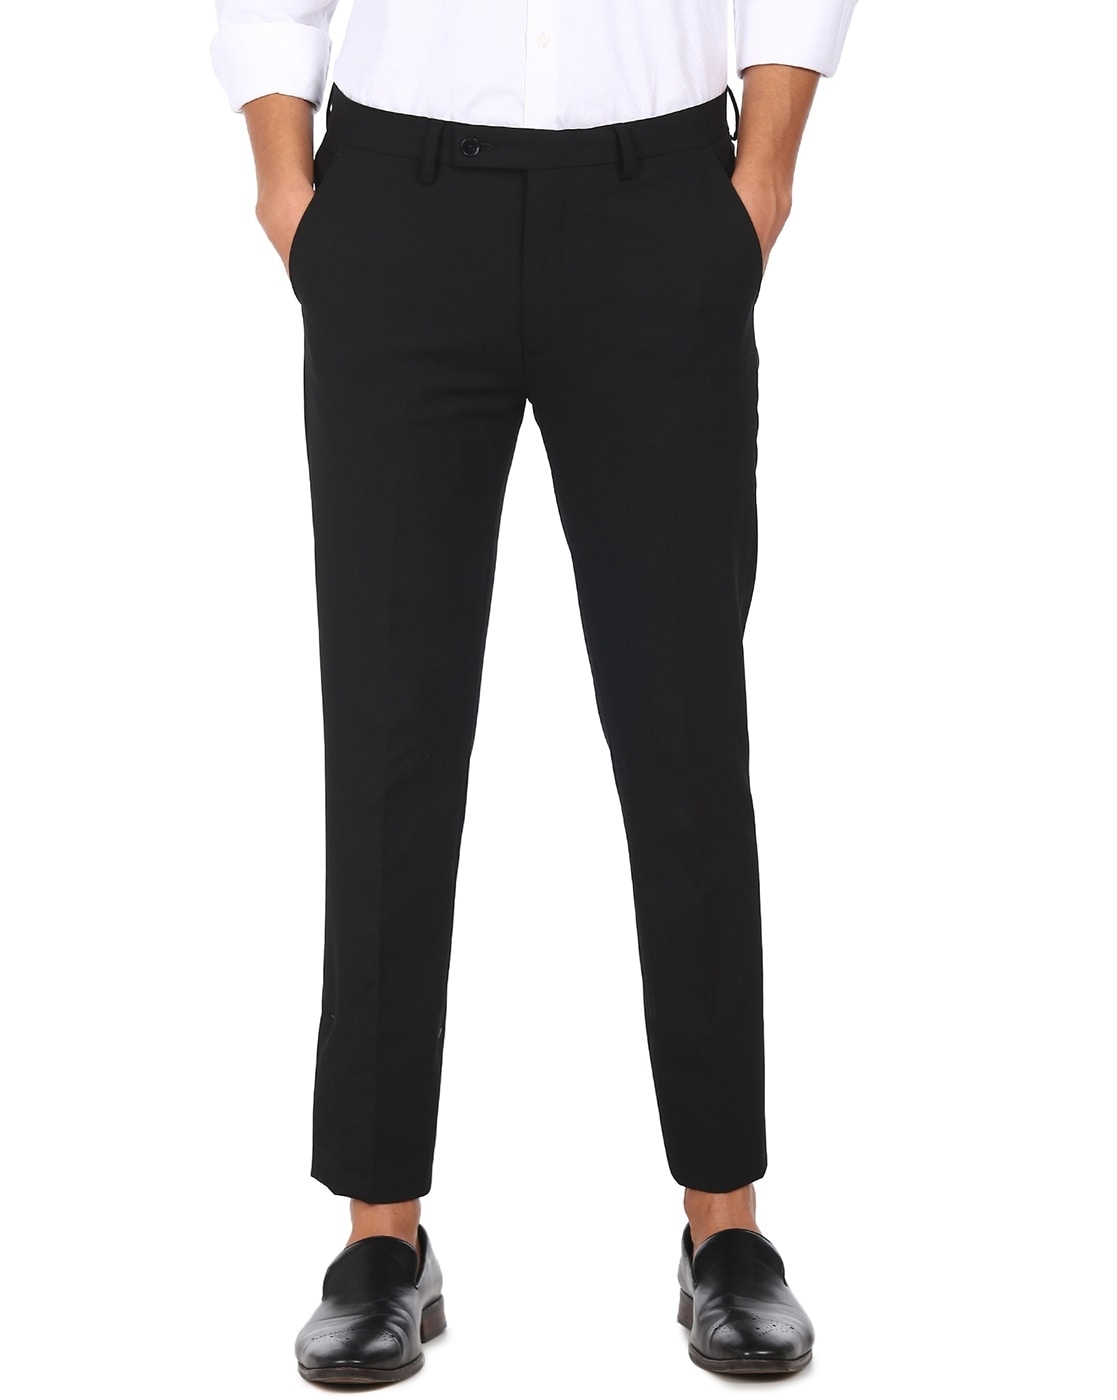 Cliths Black Formal Trouser For Mens Slim Fit, Black Pants For Men Slim Fit